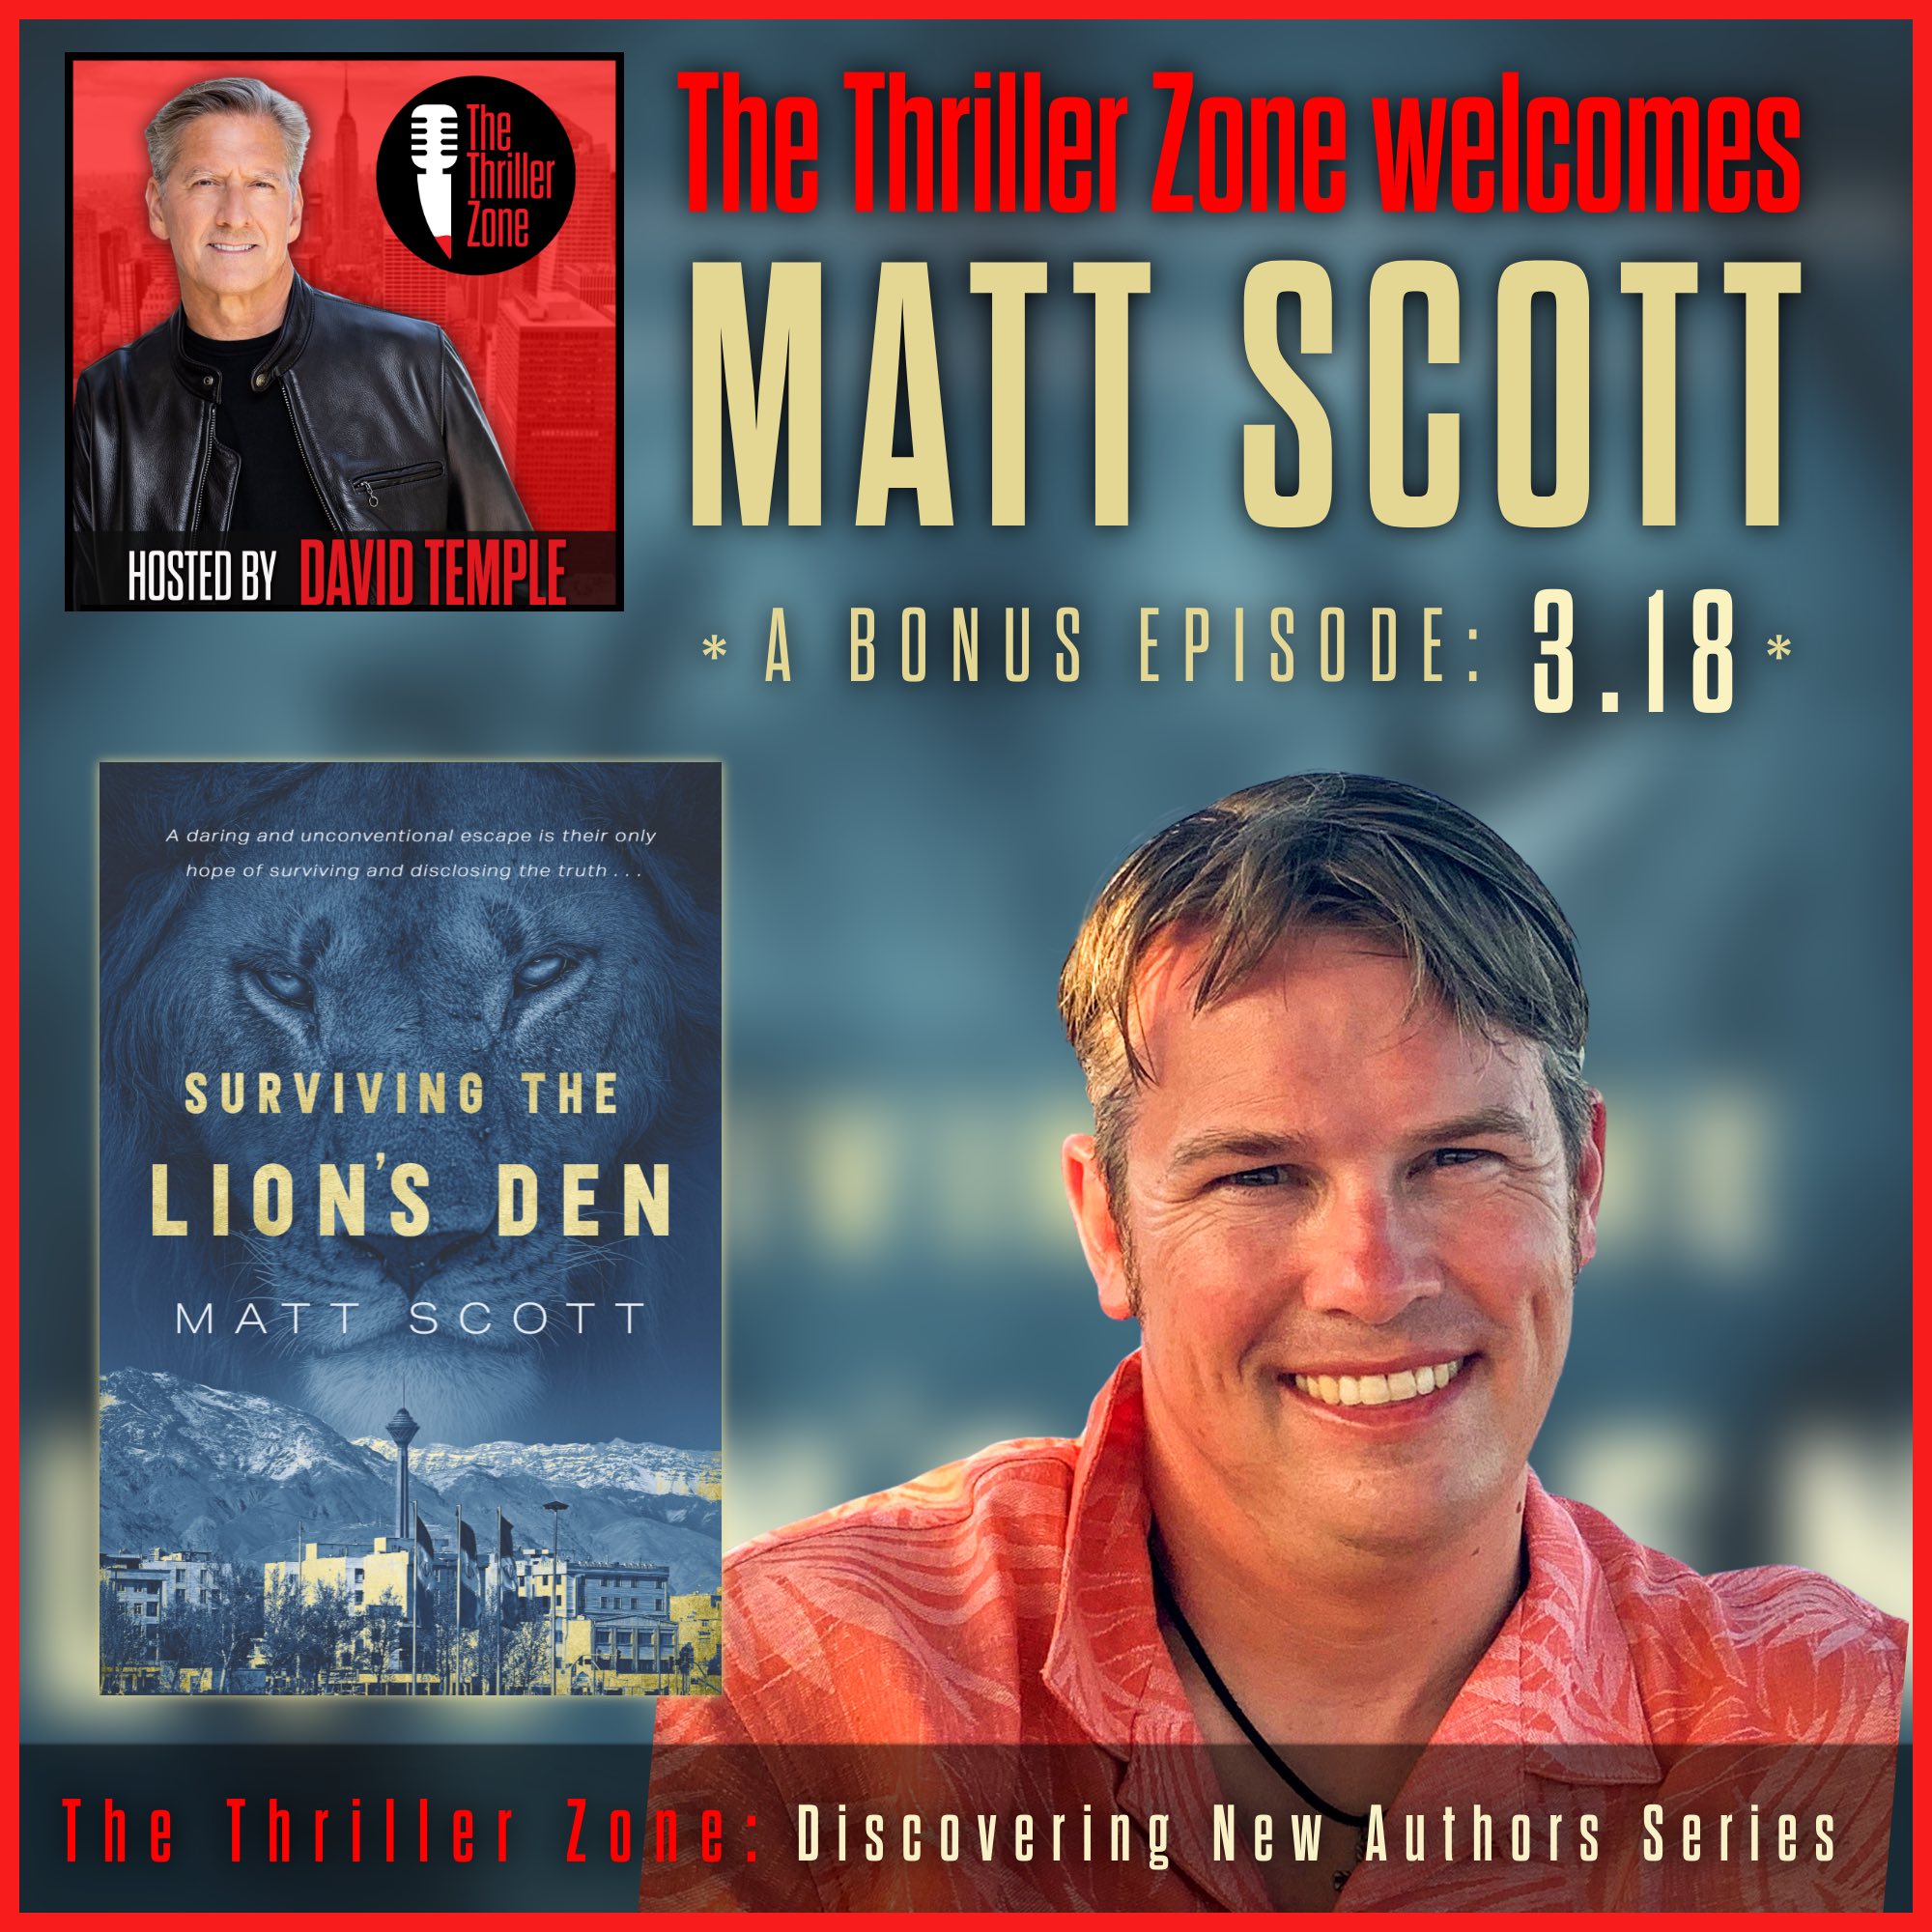 Matt Scott, Author of Surviving the Lion's Den Image